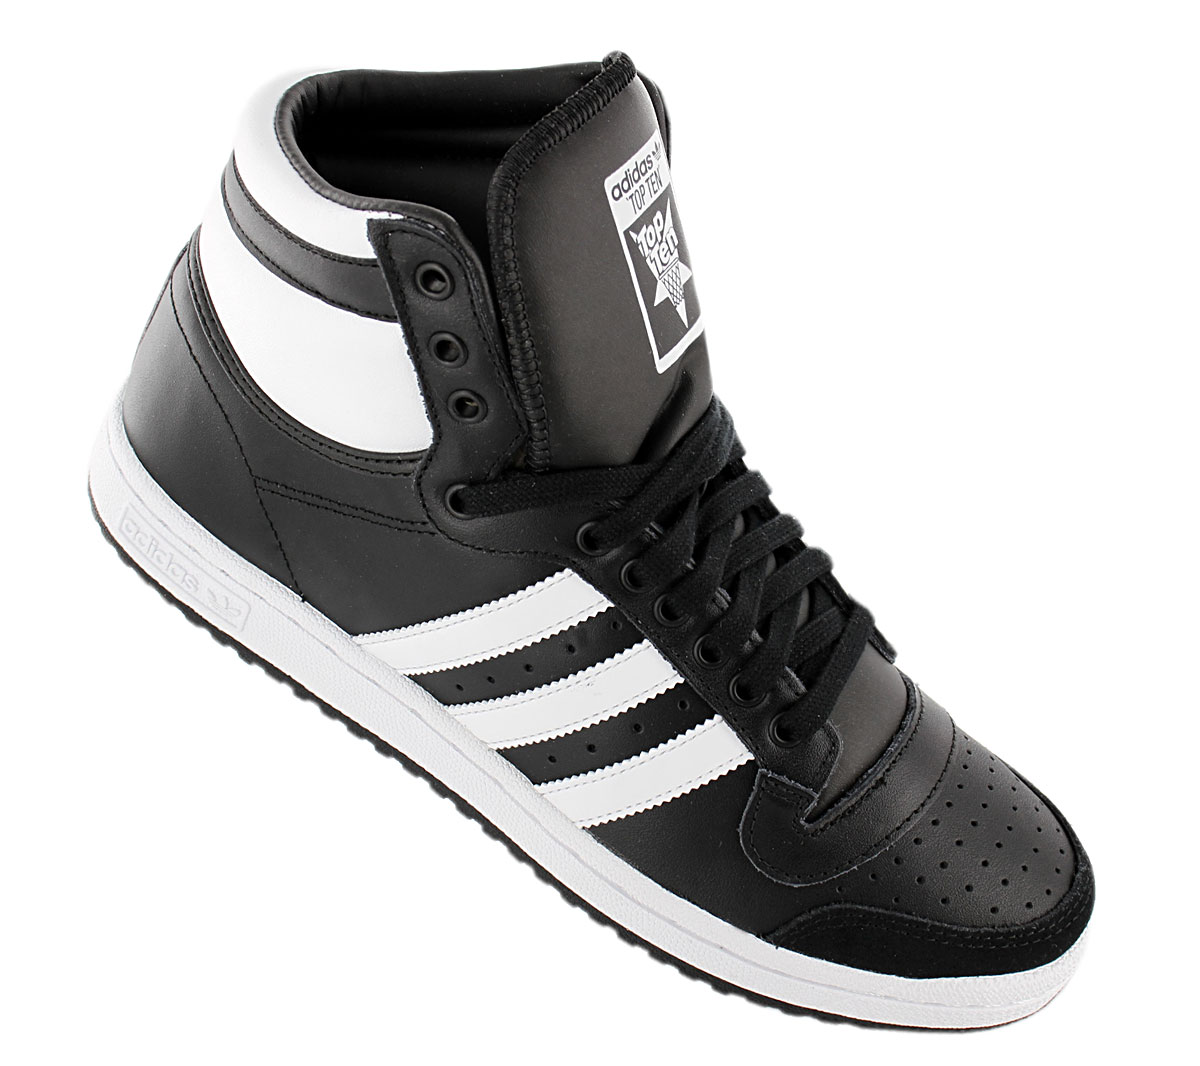 Adidas originals top ten Hi Men's Sneaker B34429 Black high Top Shoes ...